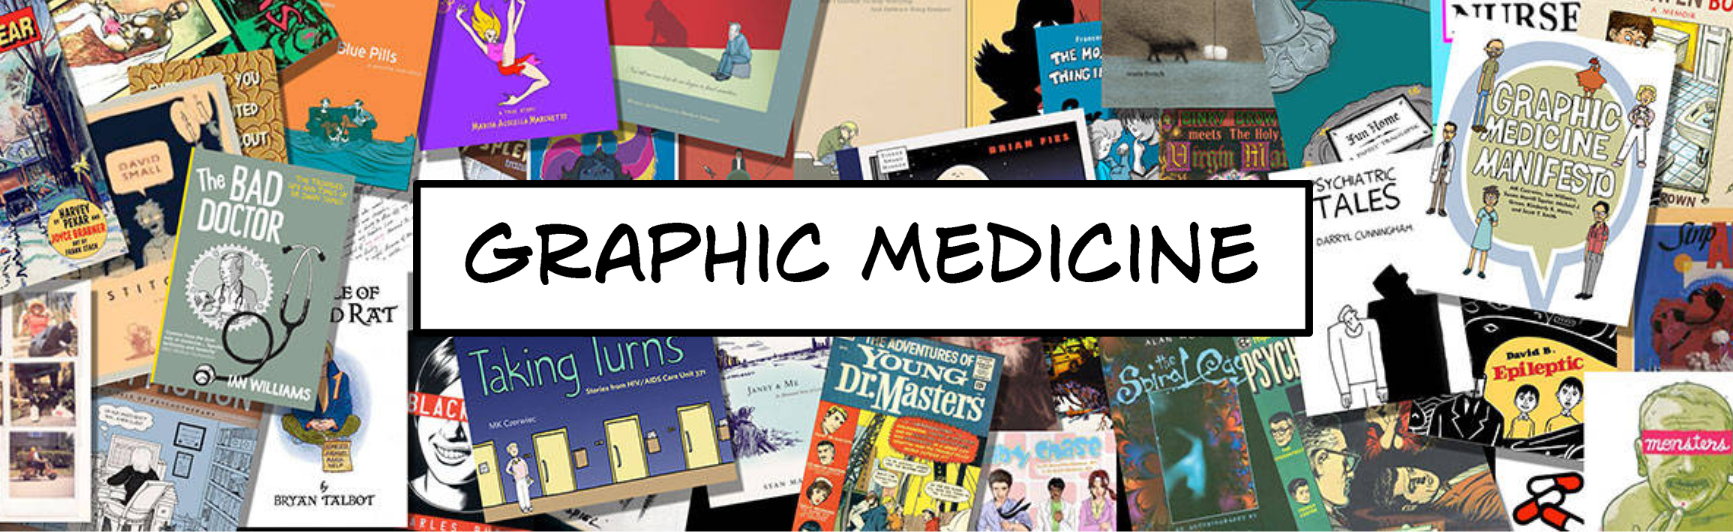 Skjermdump av loggen Graphic Medicine som viser collage med ulike tegneserier